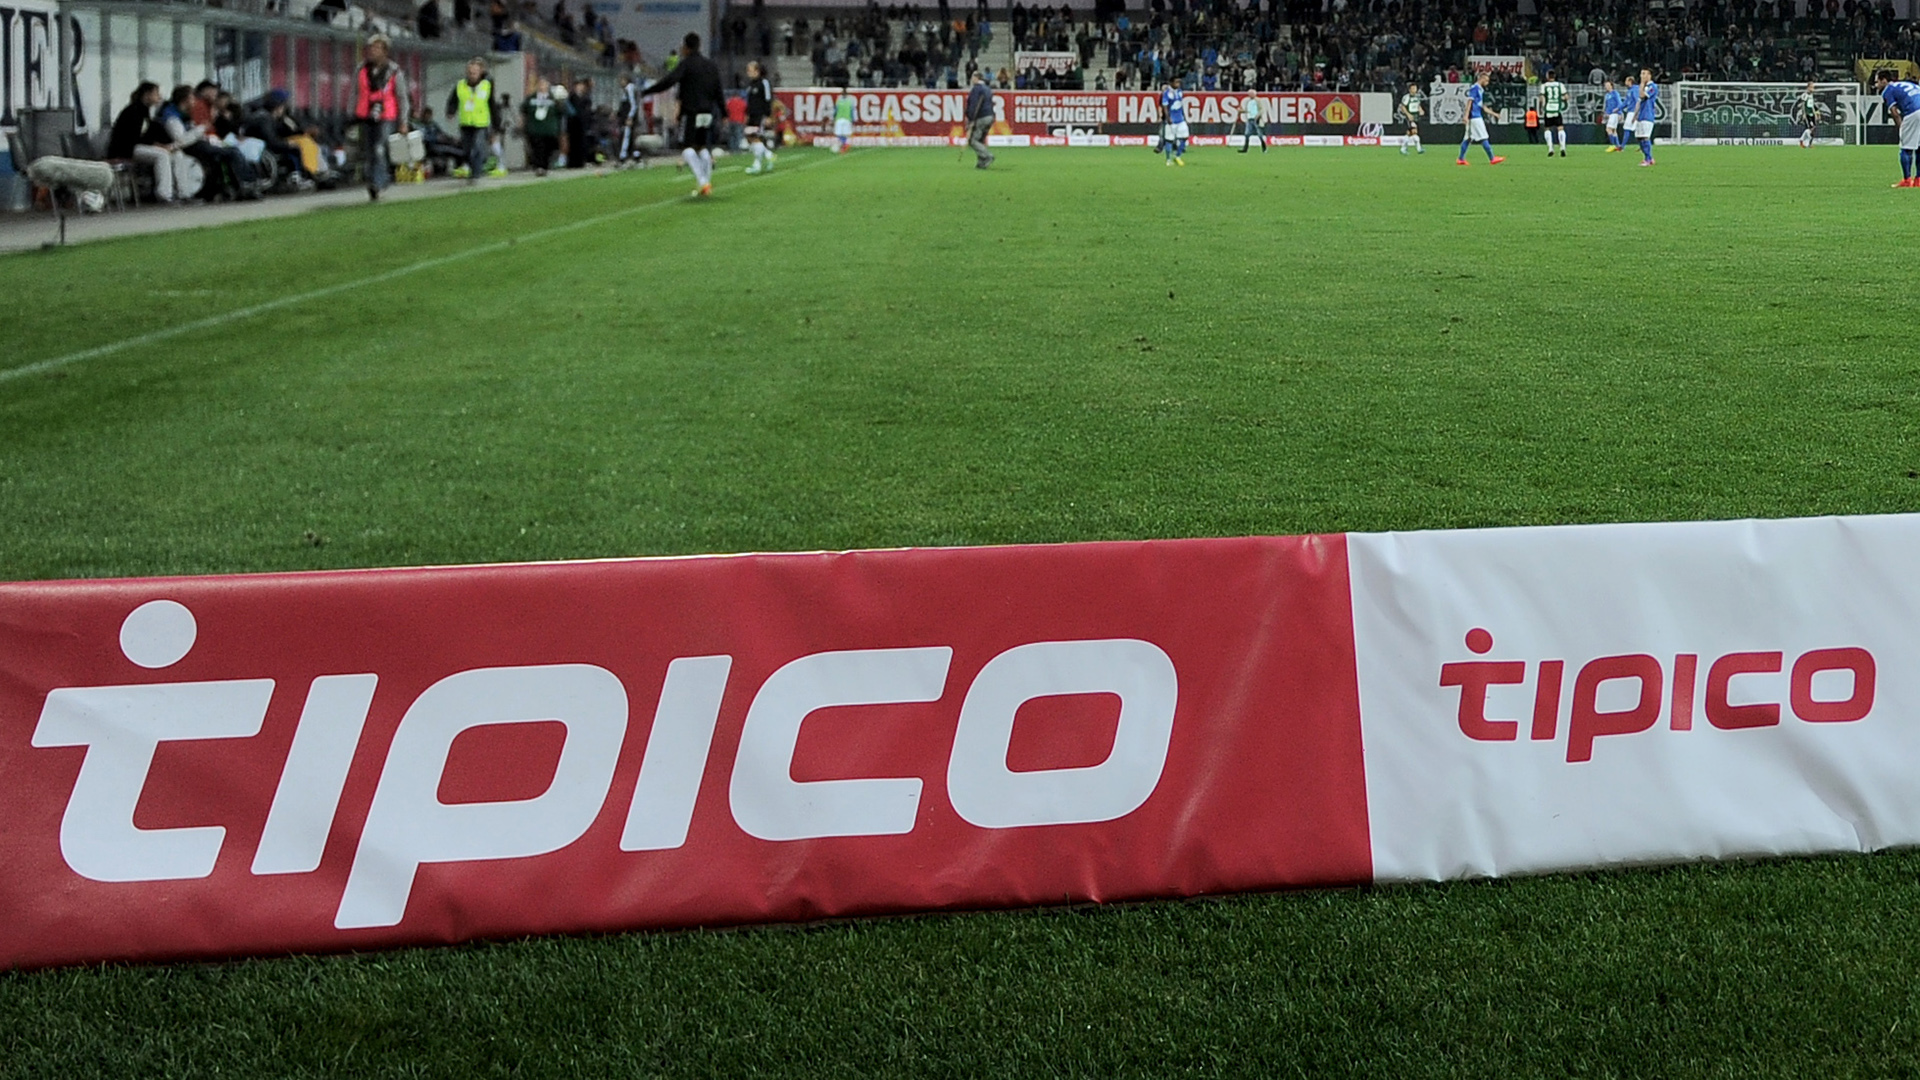 Tipico-Werbung an einem Fußballfeld | picture alliance / CITYPRESS24